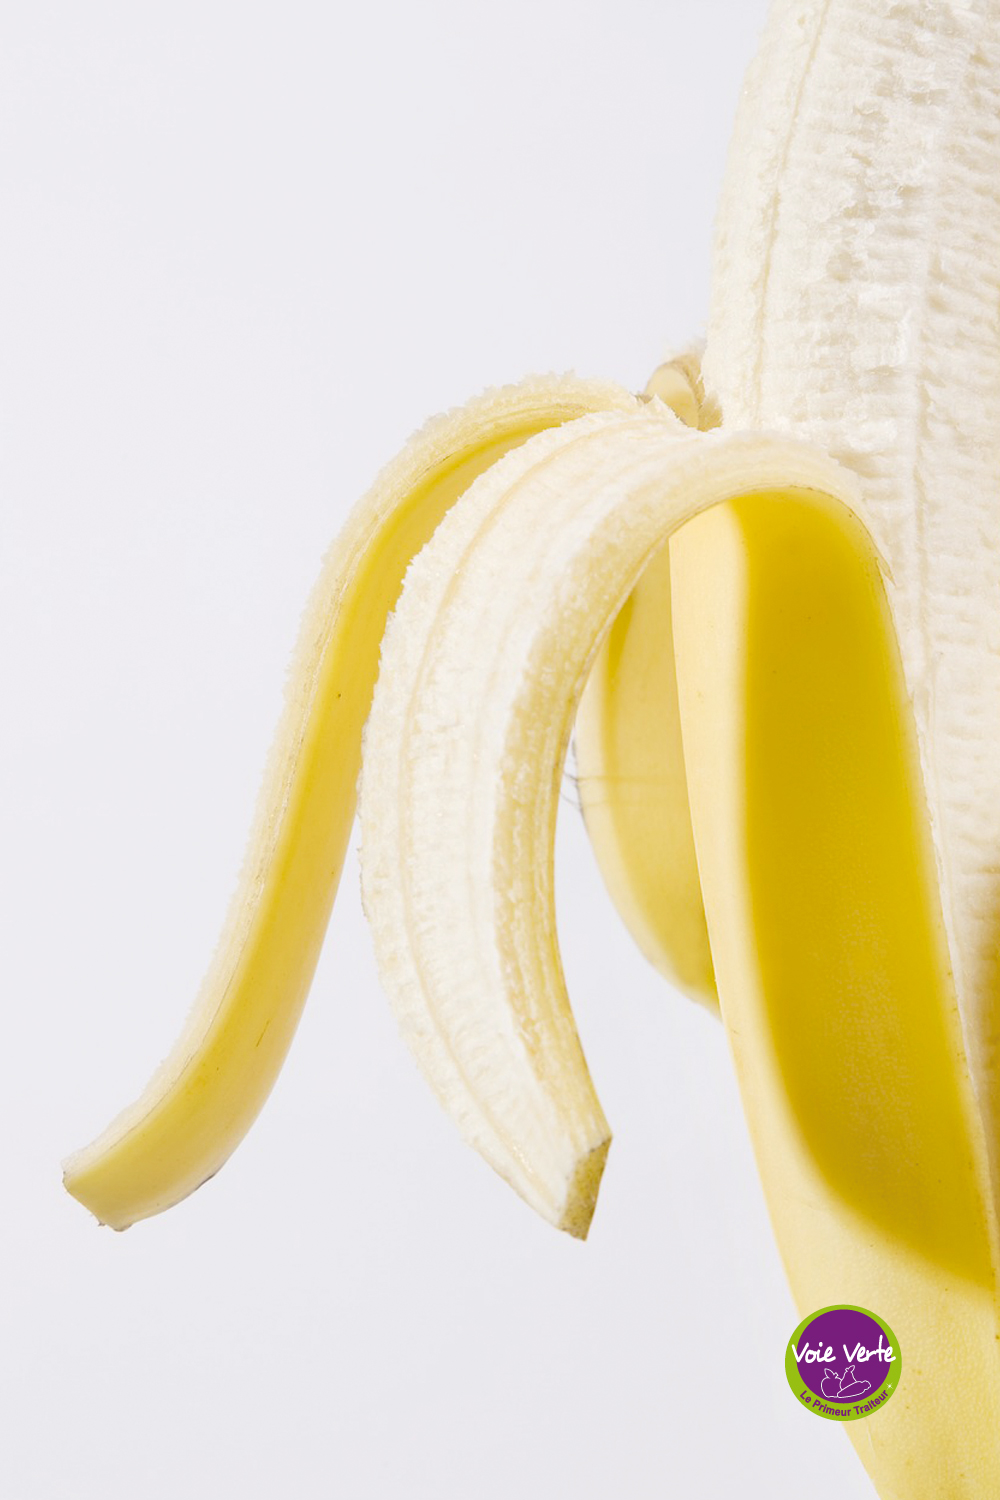 bienfaits-banane